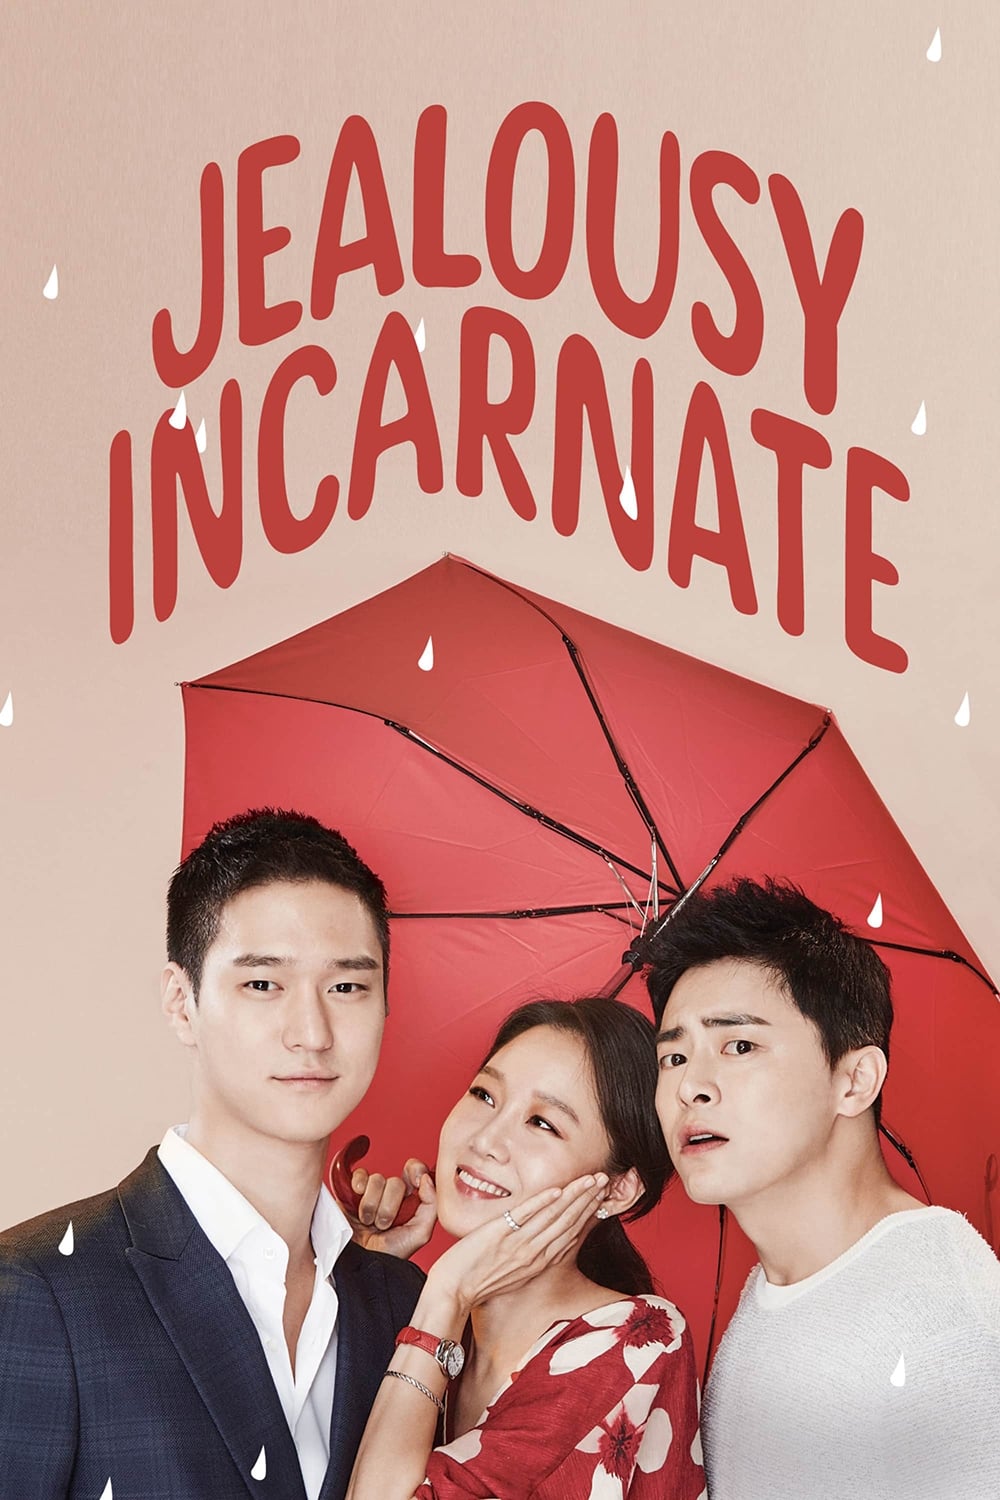 Jealousy Incarnate (2016)